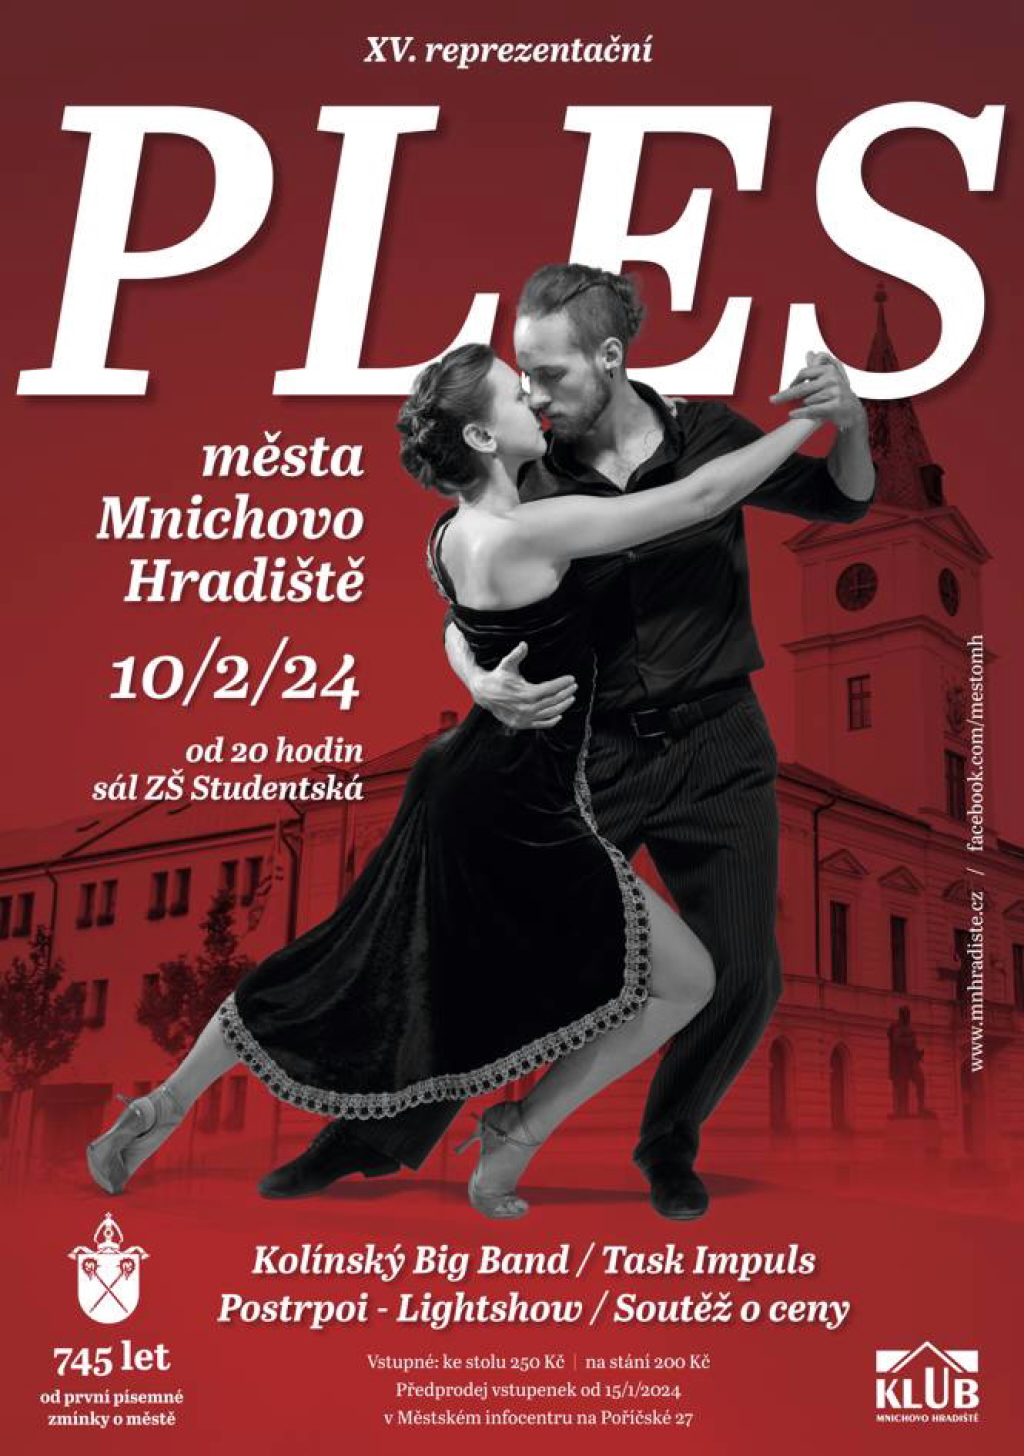 XV. reprezentační ples města Mnichovo Hradiště se uskuteční 10. února